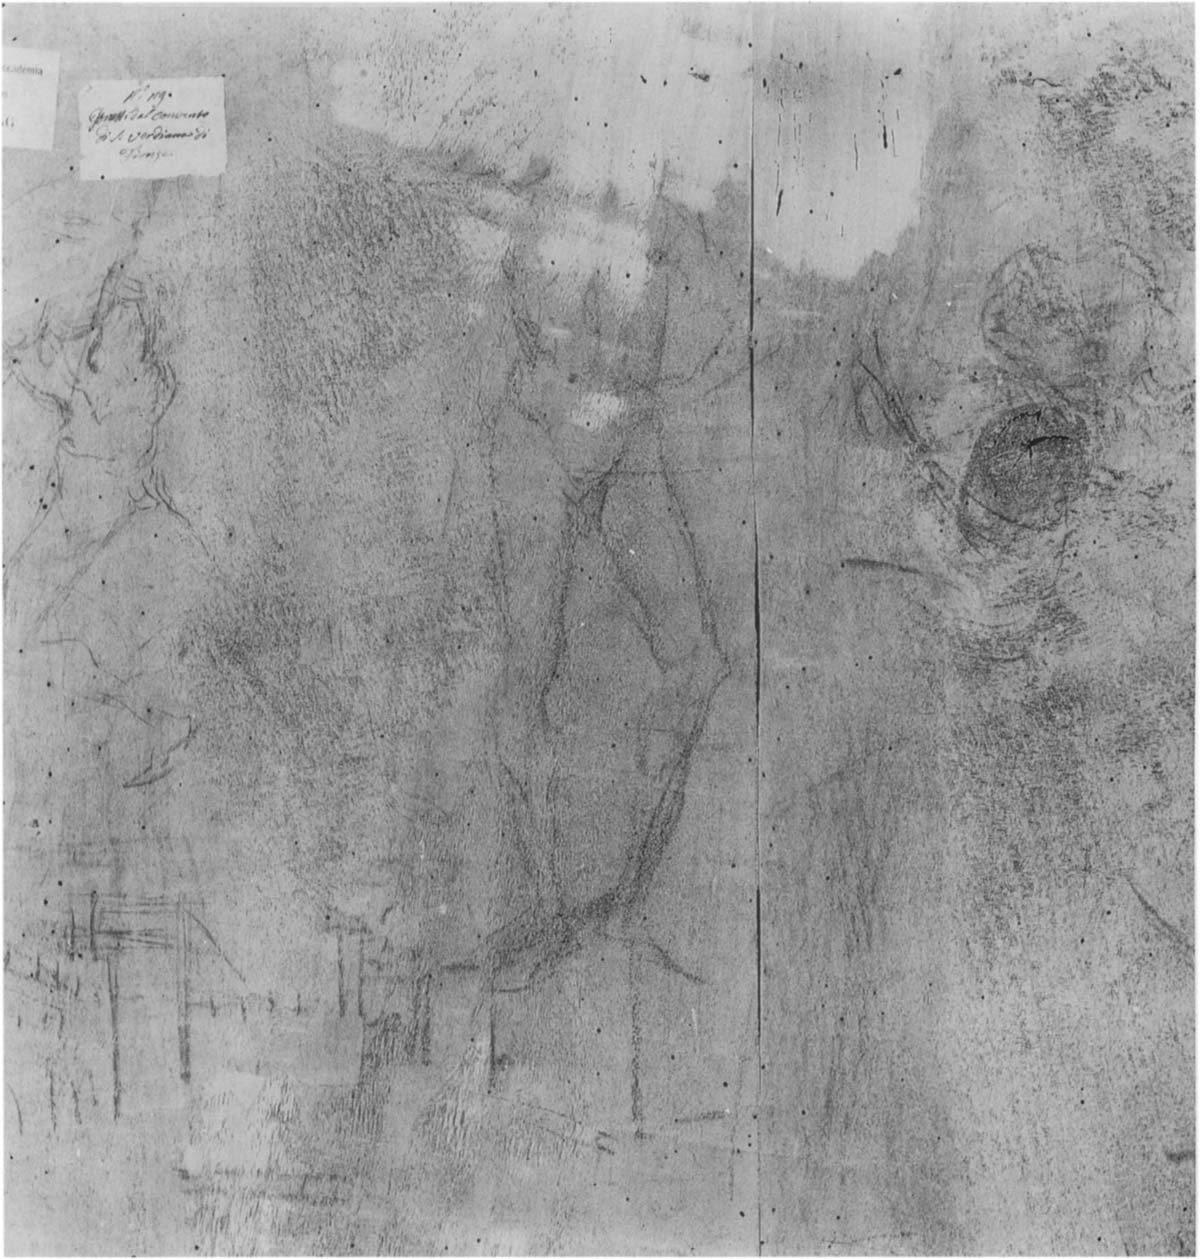 Andrea del Verrocchio e Leonardo da Vinci, Battesimo di Cristo, dettaglio del retro della tavola